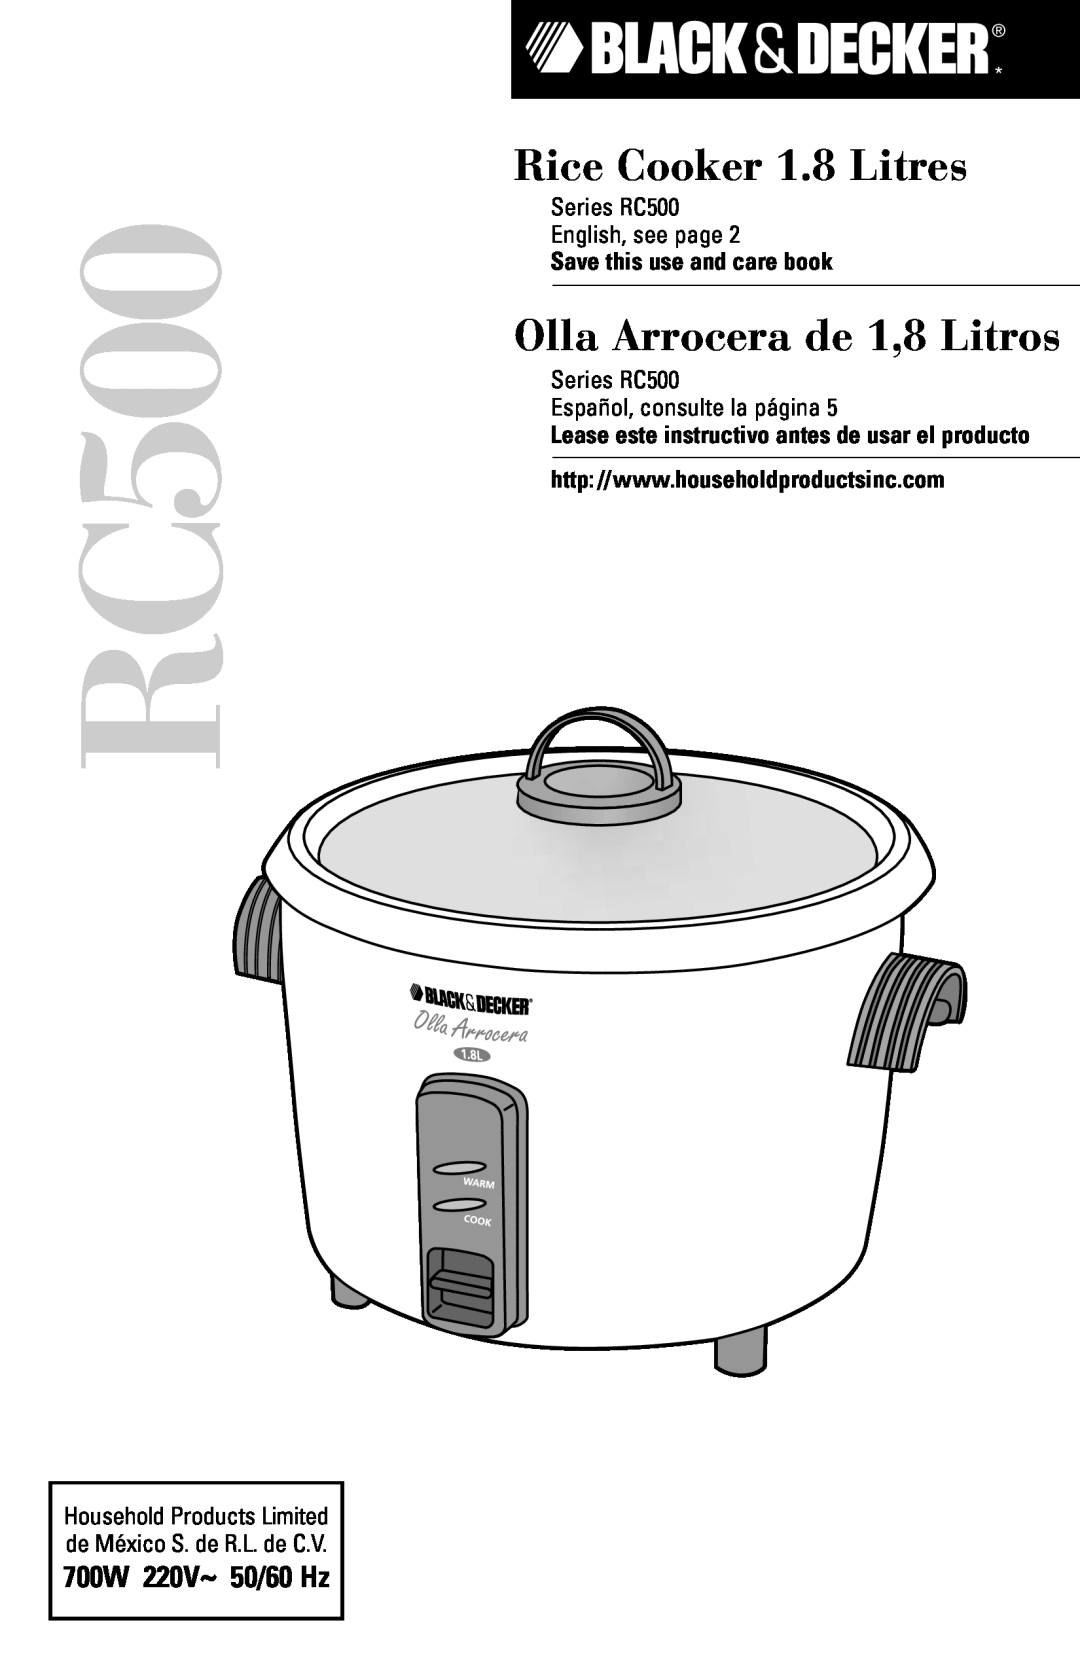 Black & Decker RC600 manual RC500, Rice Cooker 1.8 Litres, Olla Arrocera de 1,8 Litros, 700W 220V~ 50/60 Hz 